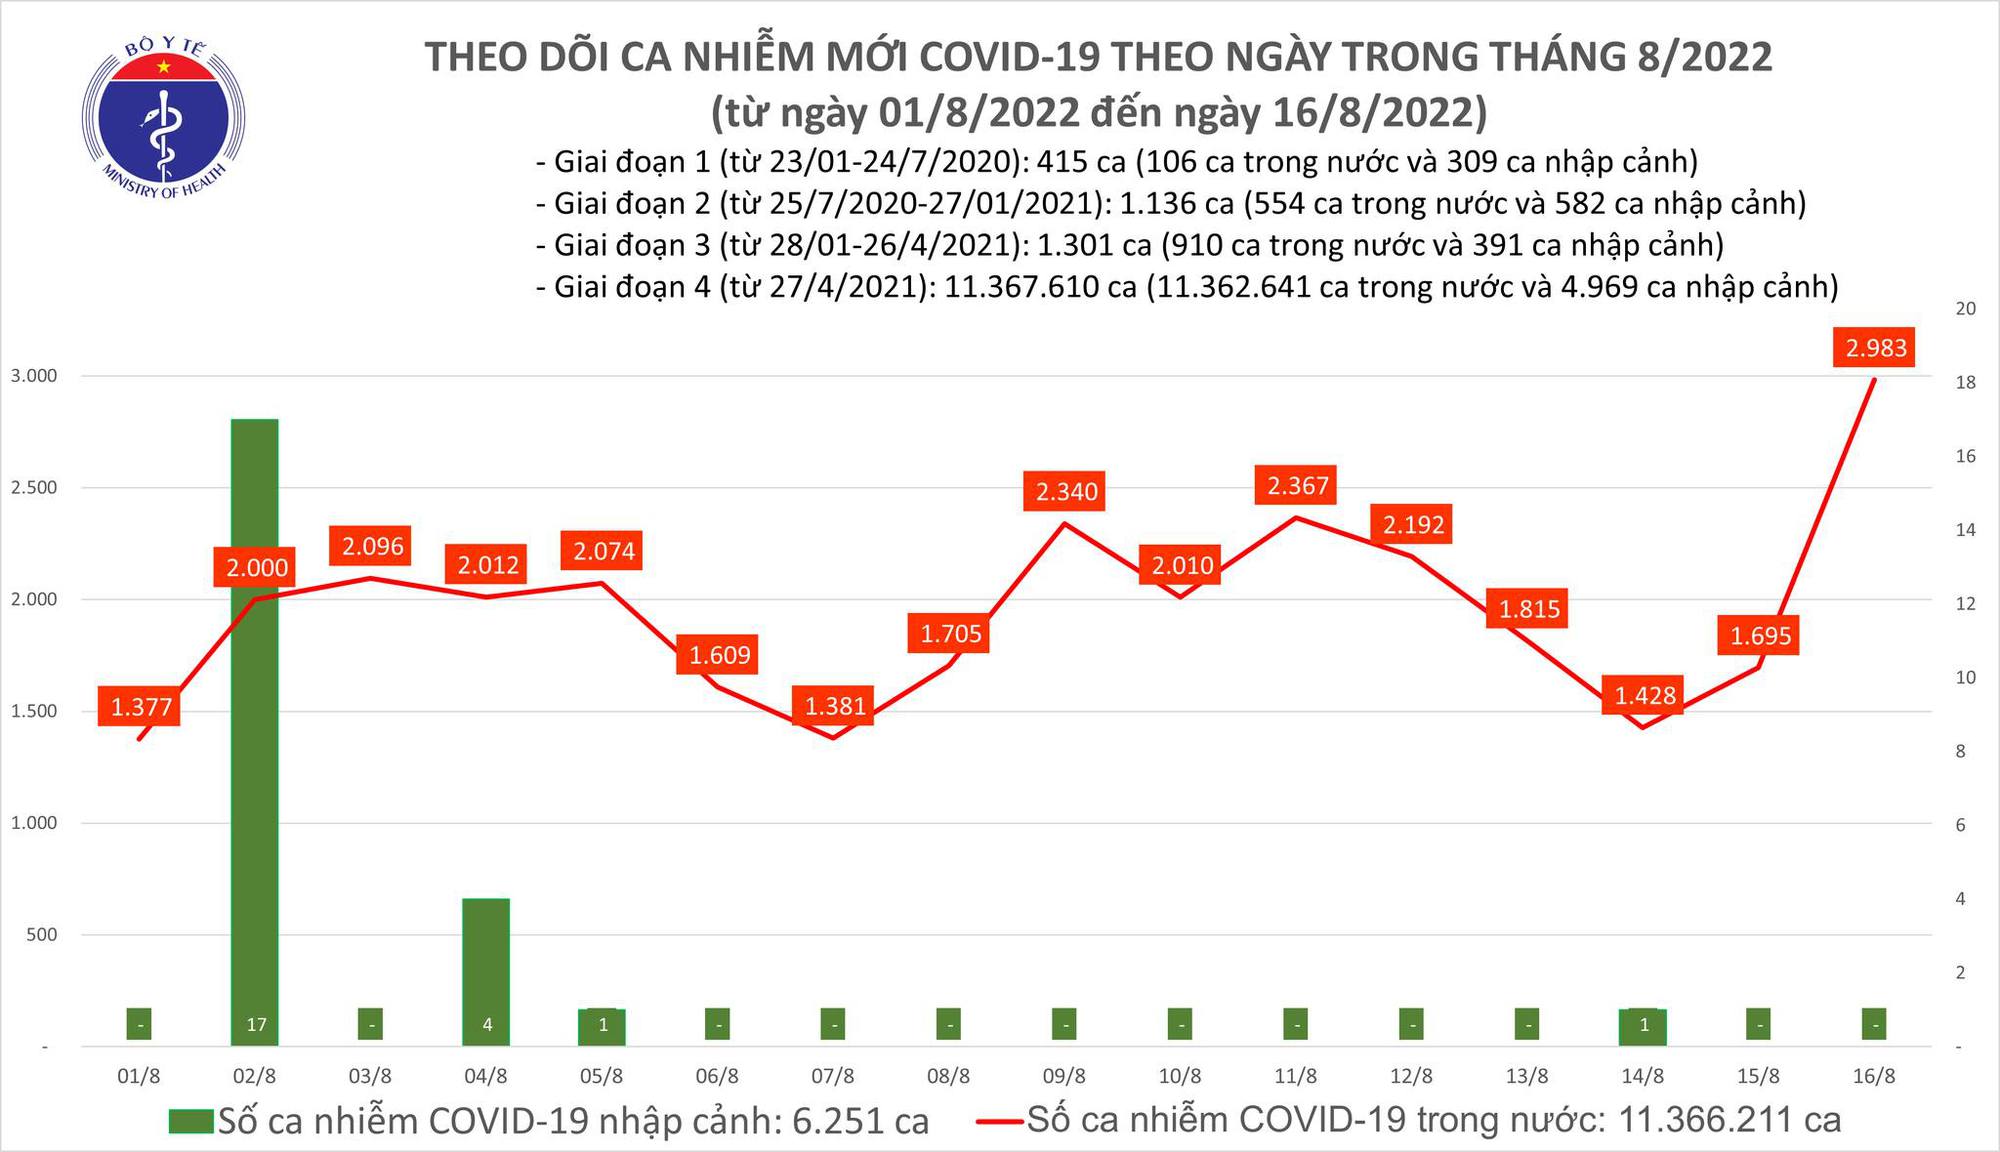 Ngày 16/8: Số người mắc COVID-19 mới tăng vọt lên gần 3.000 ca; thêm 2 ca tử vong tại Điện Biên, Quảng Ninh - Ảnh 2.